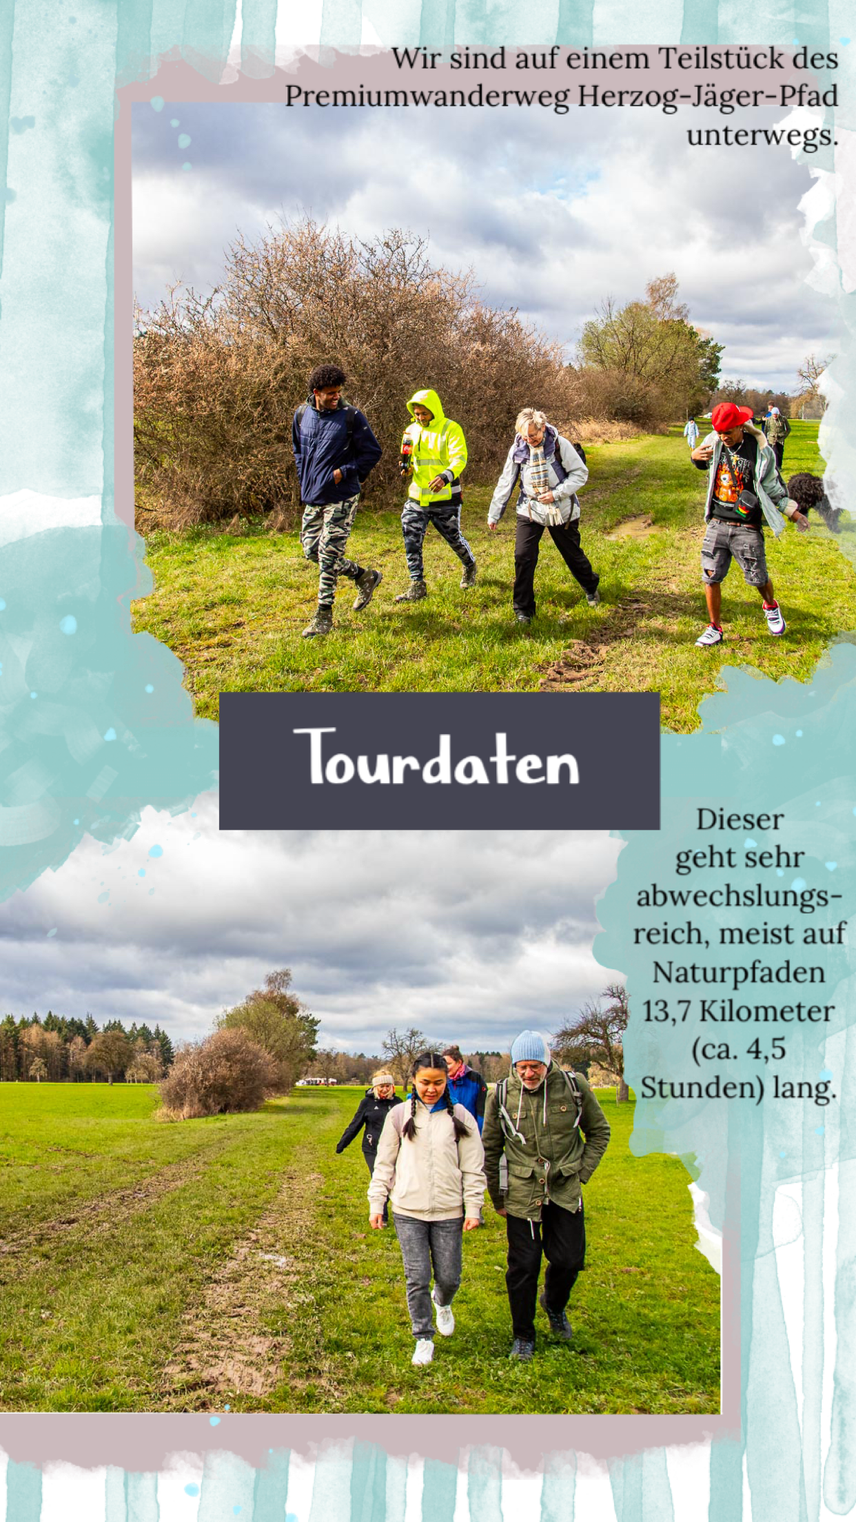 Mit dem ehrenamtlichen Integrationsprojekt "Wanderglück" unterwegs auf dem Premiumwanderweg "Herzog-Jäger-Pfad" im Naturpark Schönbuch.